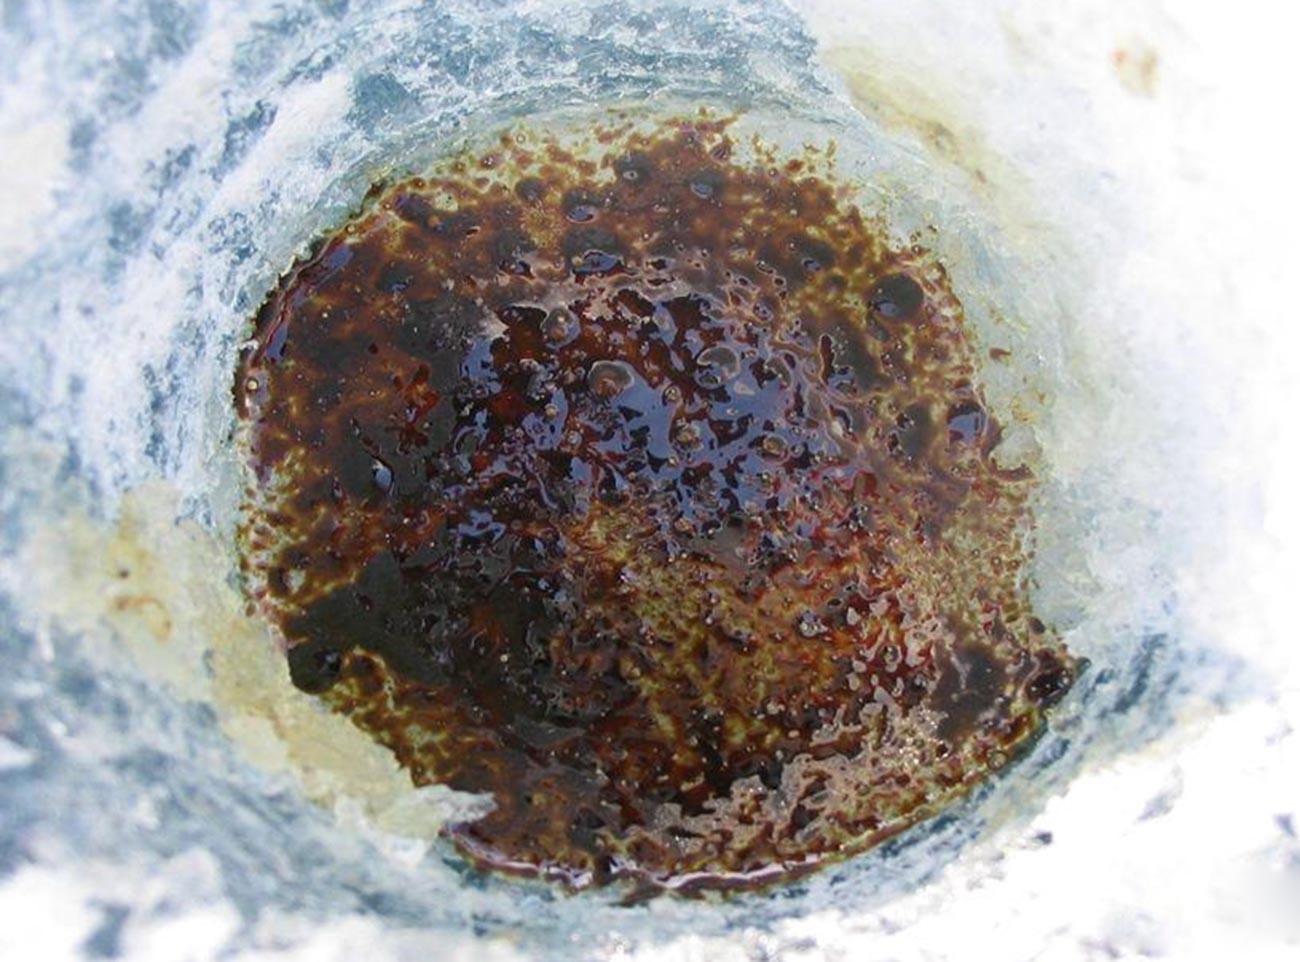 Petróleo em buraco aberto no gelo do lago Baikal, na Sibéria
